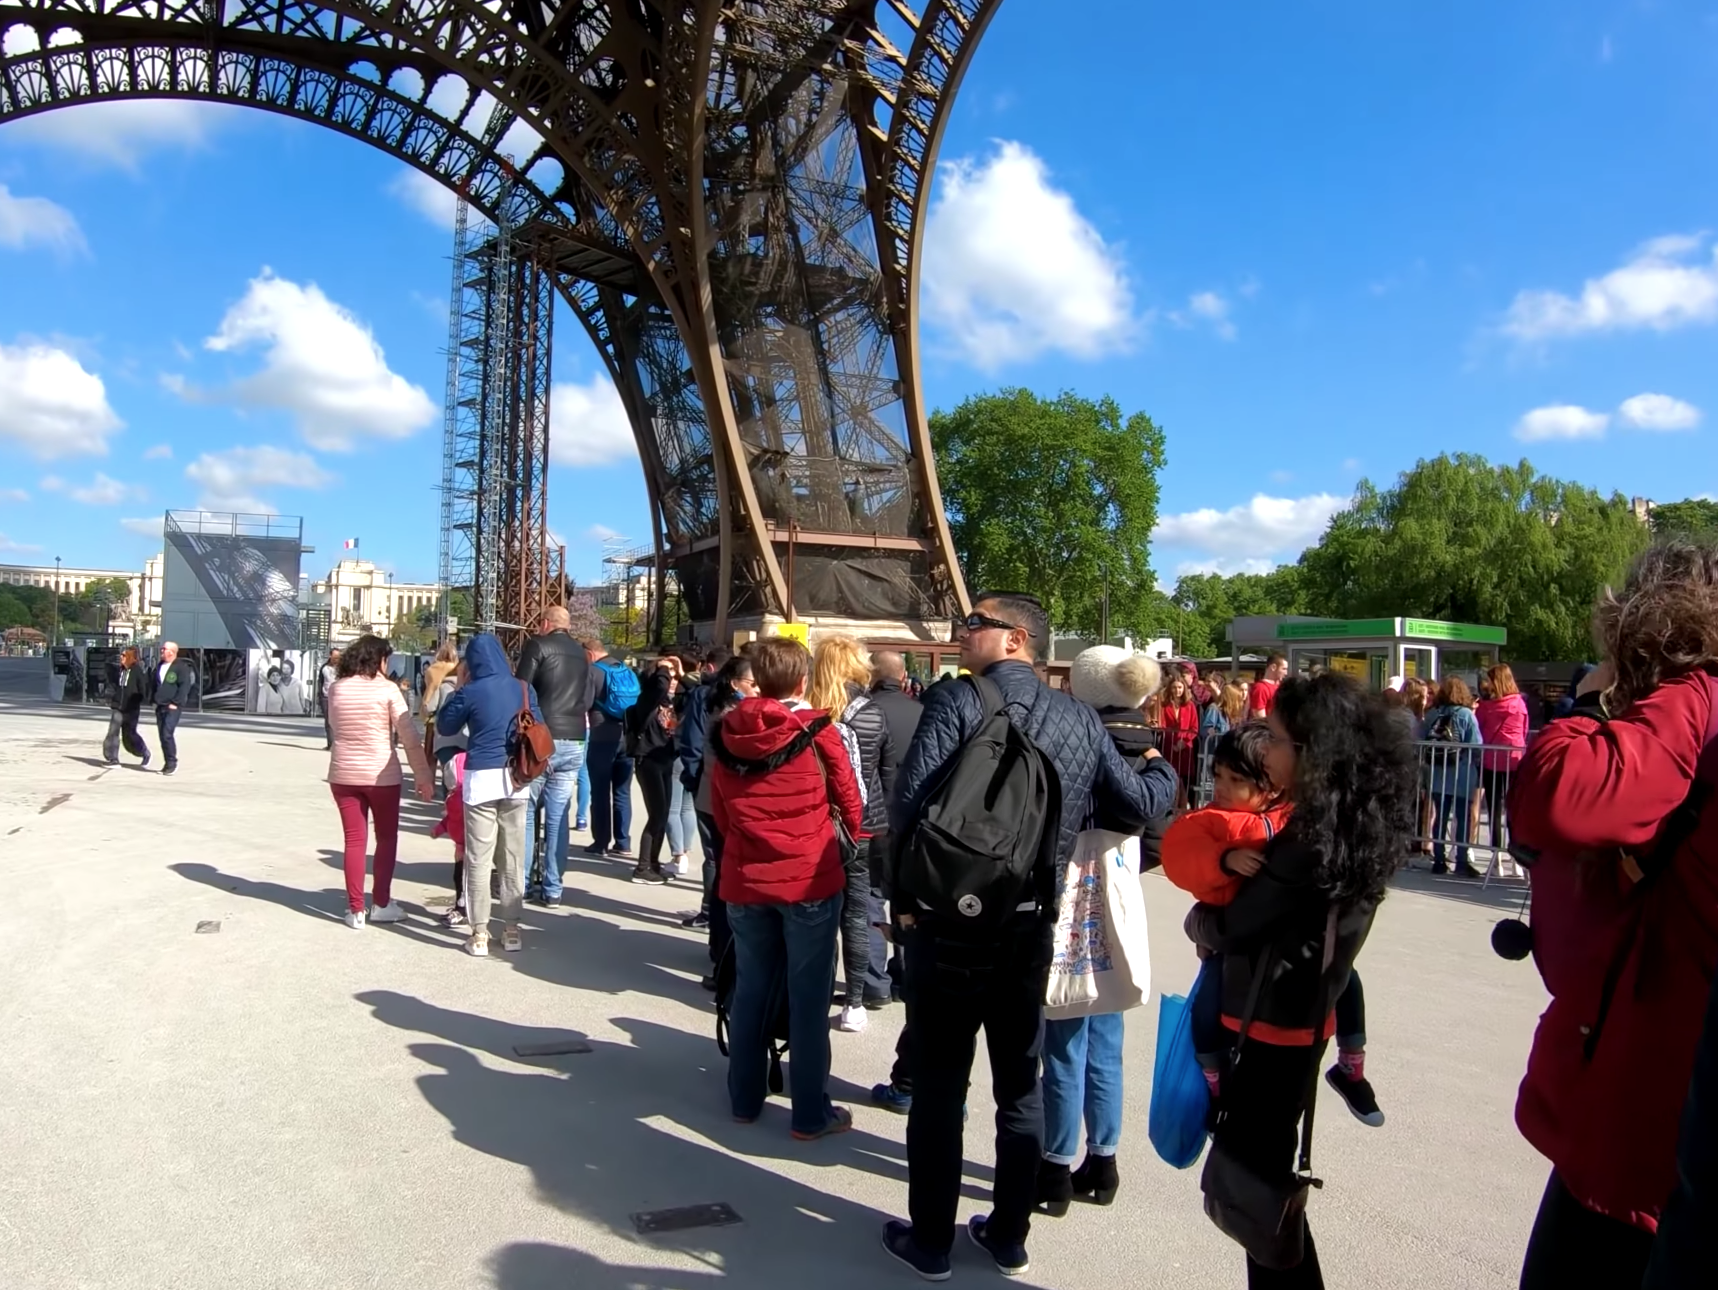 Эйфелева башня (париж) - подробная информация с фото